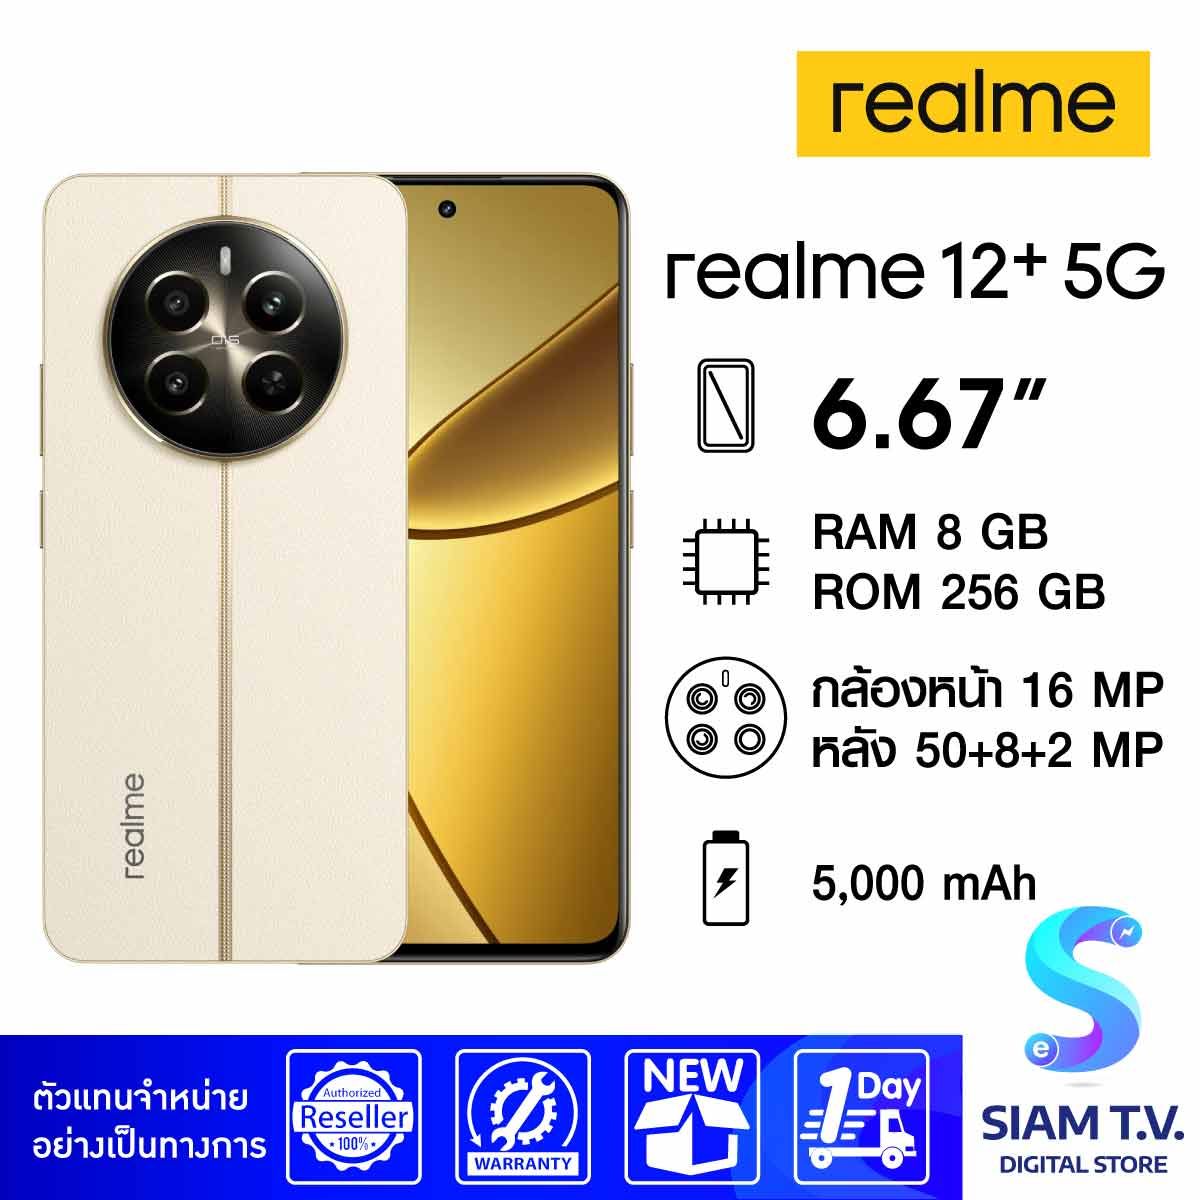 Realme 12+ 5G (RAM 8GB / ROM 256GB)